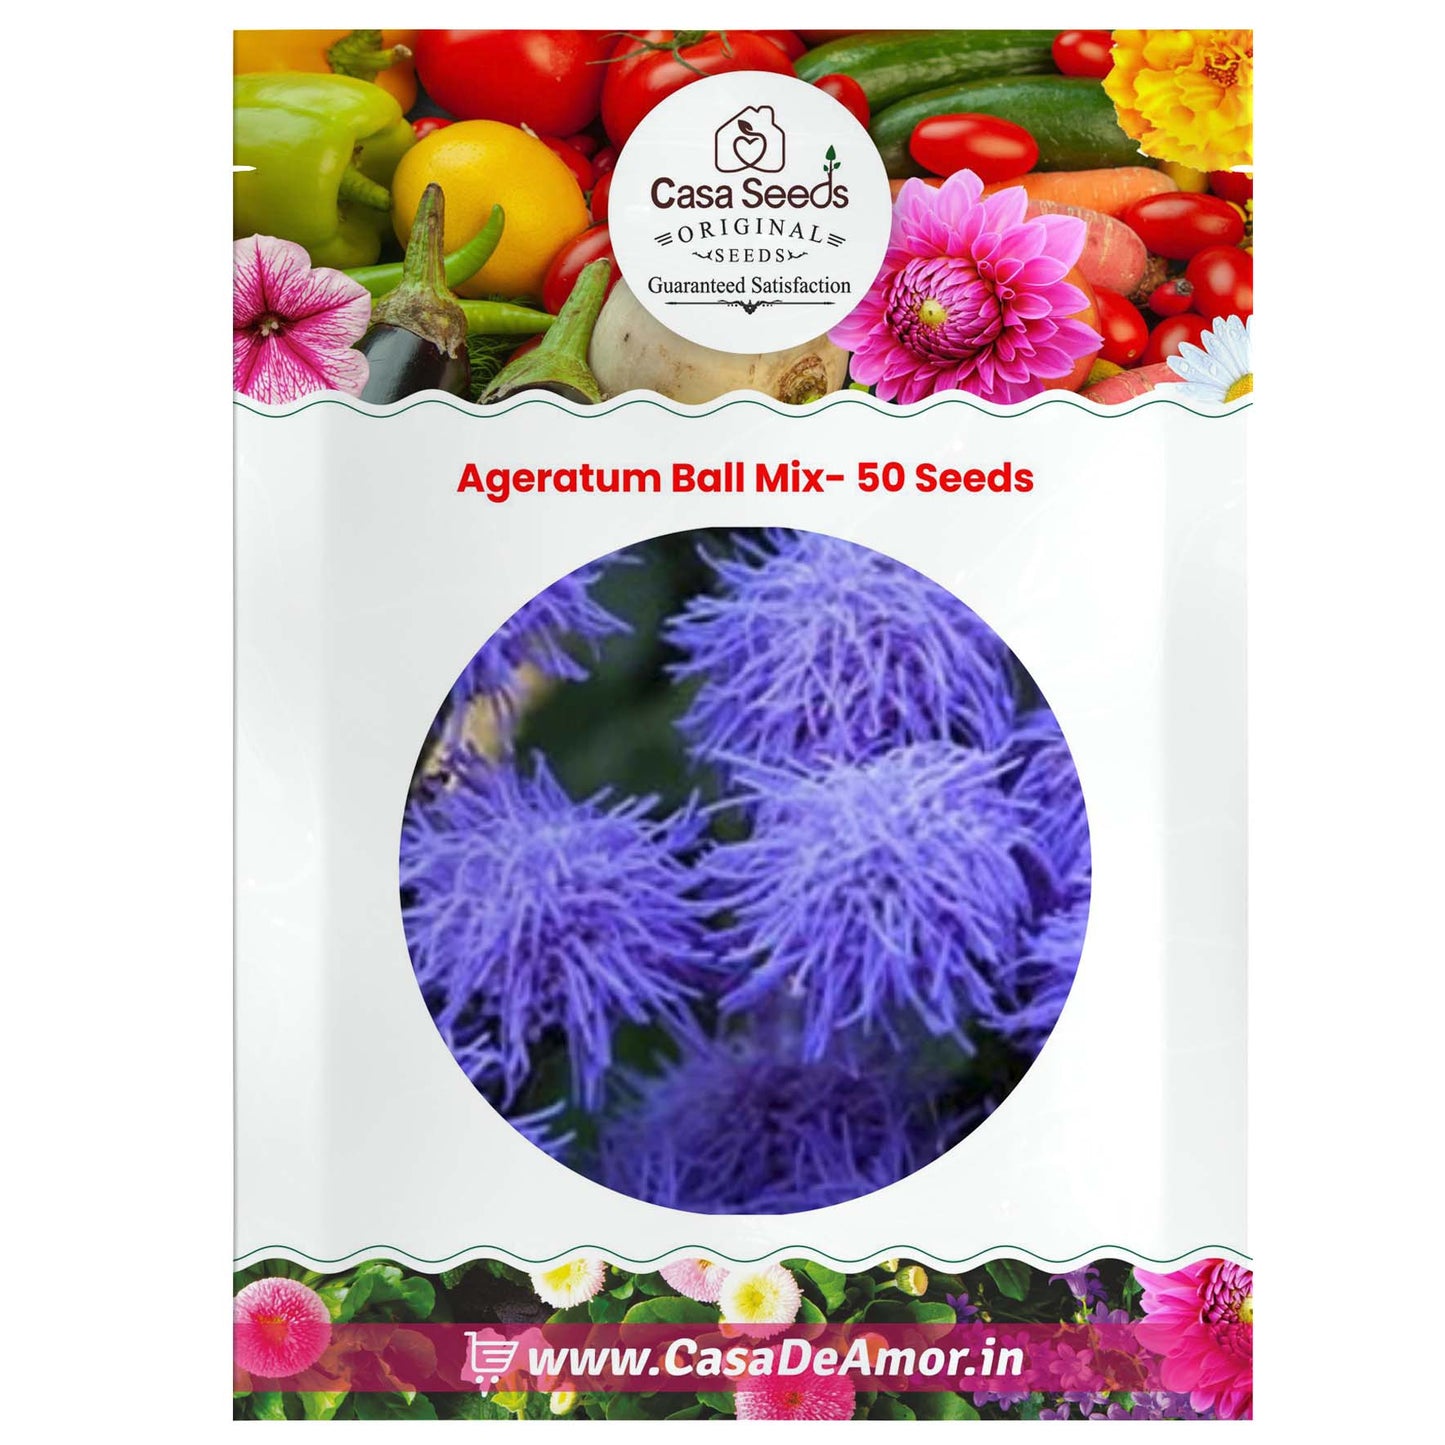 Ageratum Ball Mix- 50 Seeds